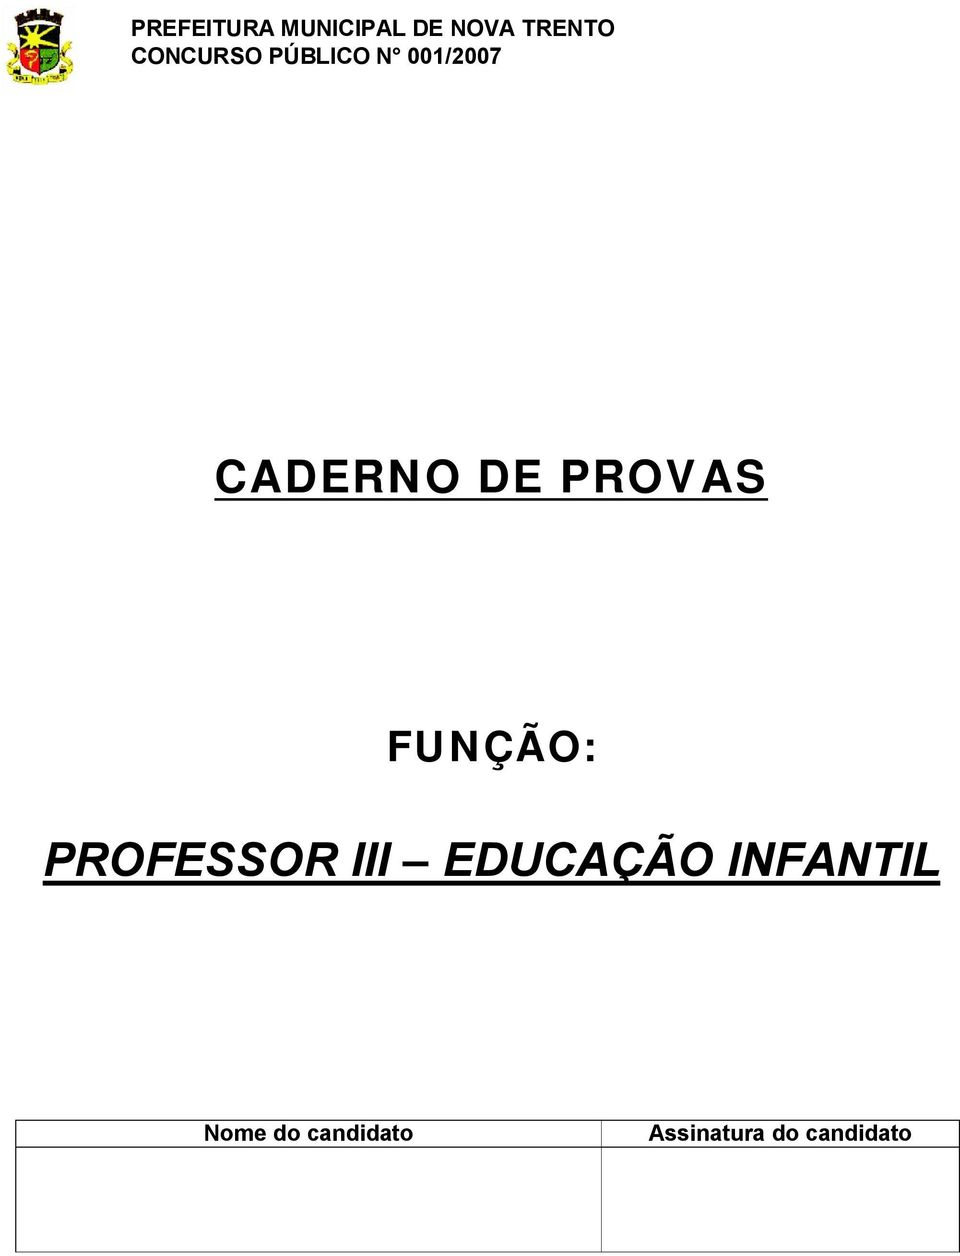 PROVAS FUNÇÃO: PROFESSOR III EDUCAÇÃO